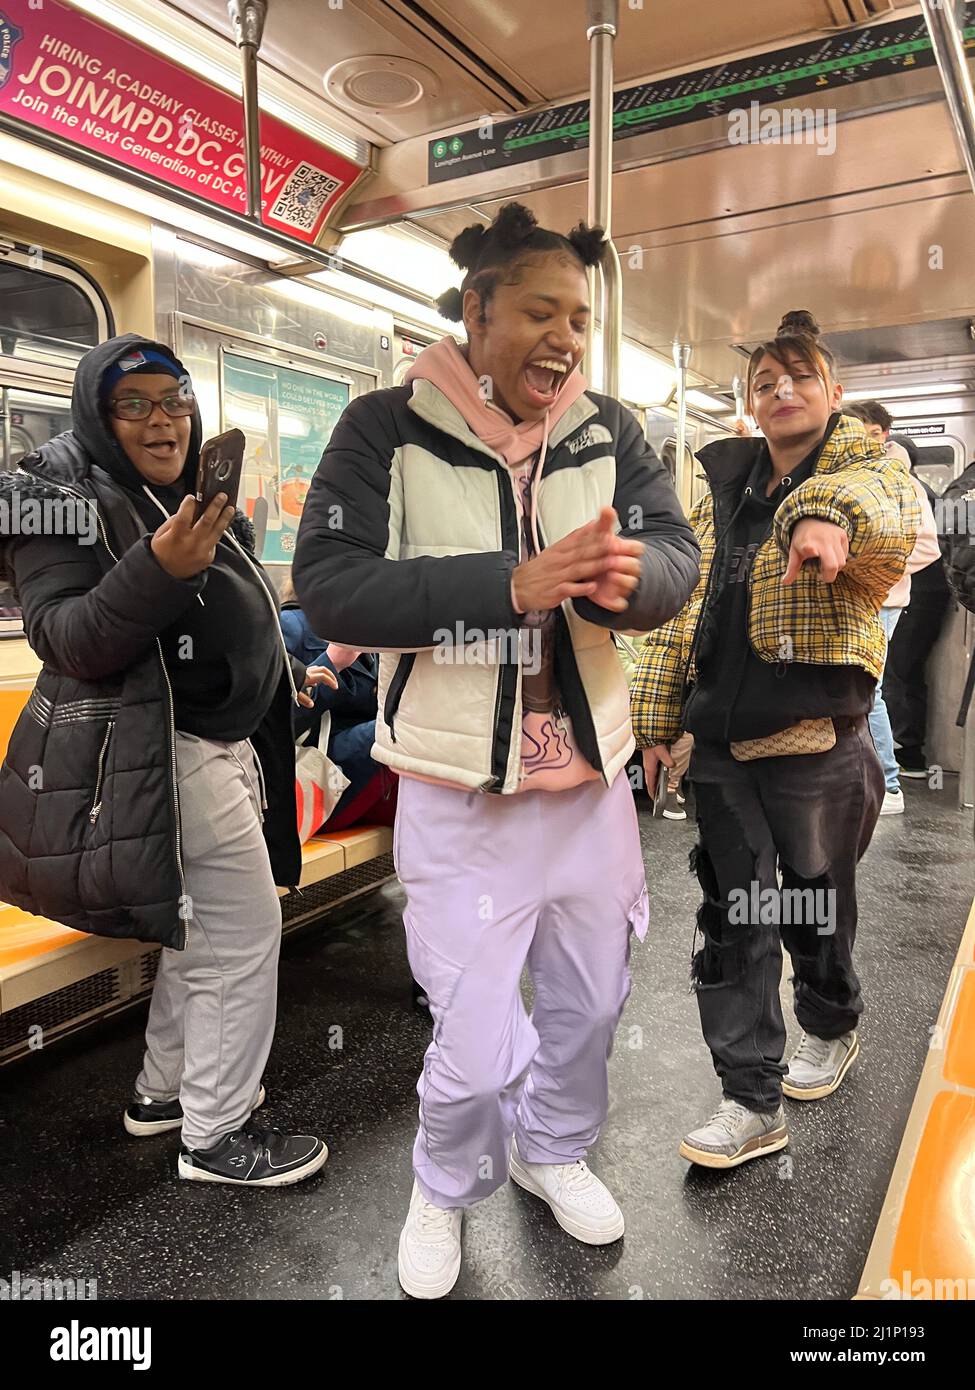 La giovane cantante e ballerina hip-hop si esibisce mentre i suoi amici la registrano mentre si guida un treno 6 lungo Lexington Avenue a Manhattan, New York City. Foto Stock